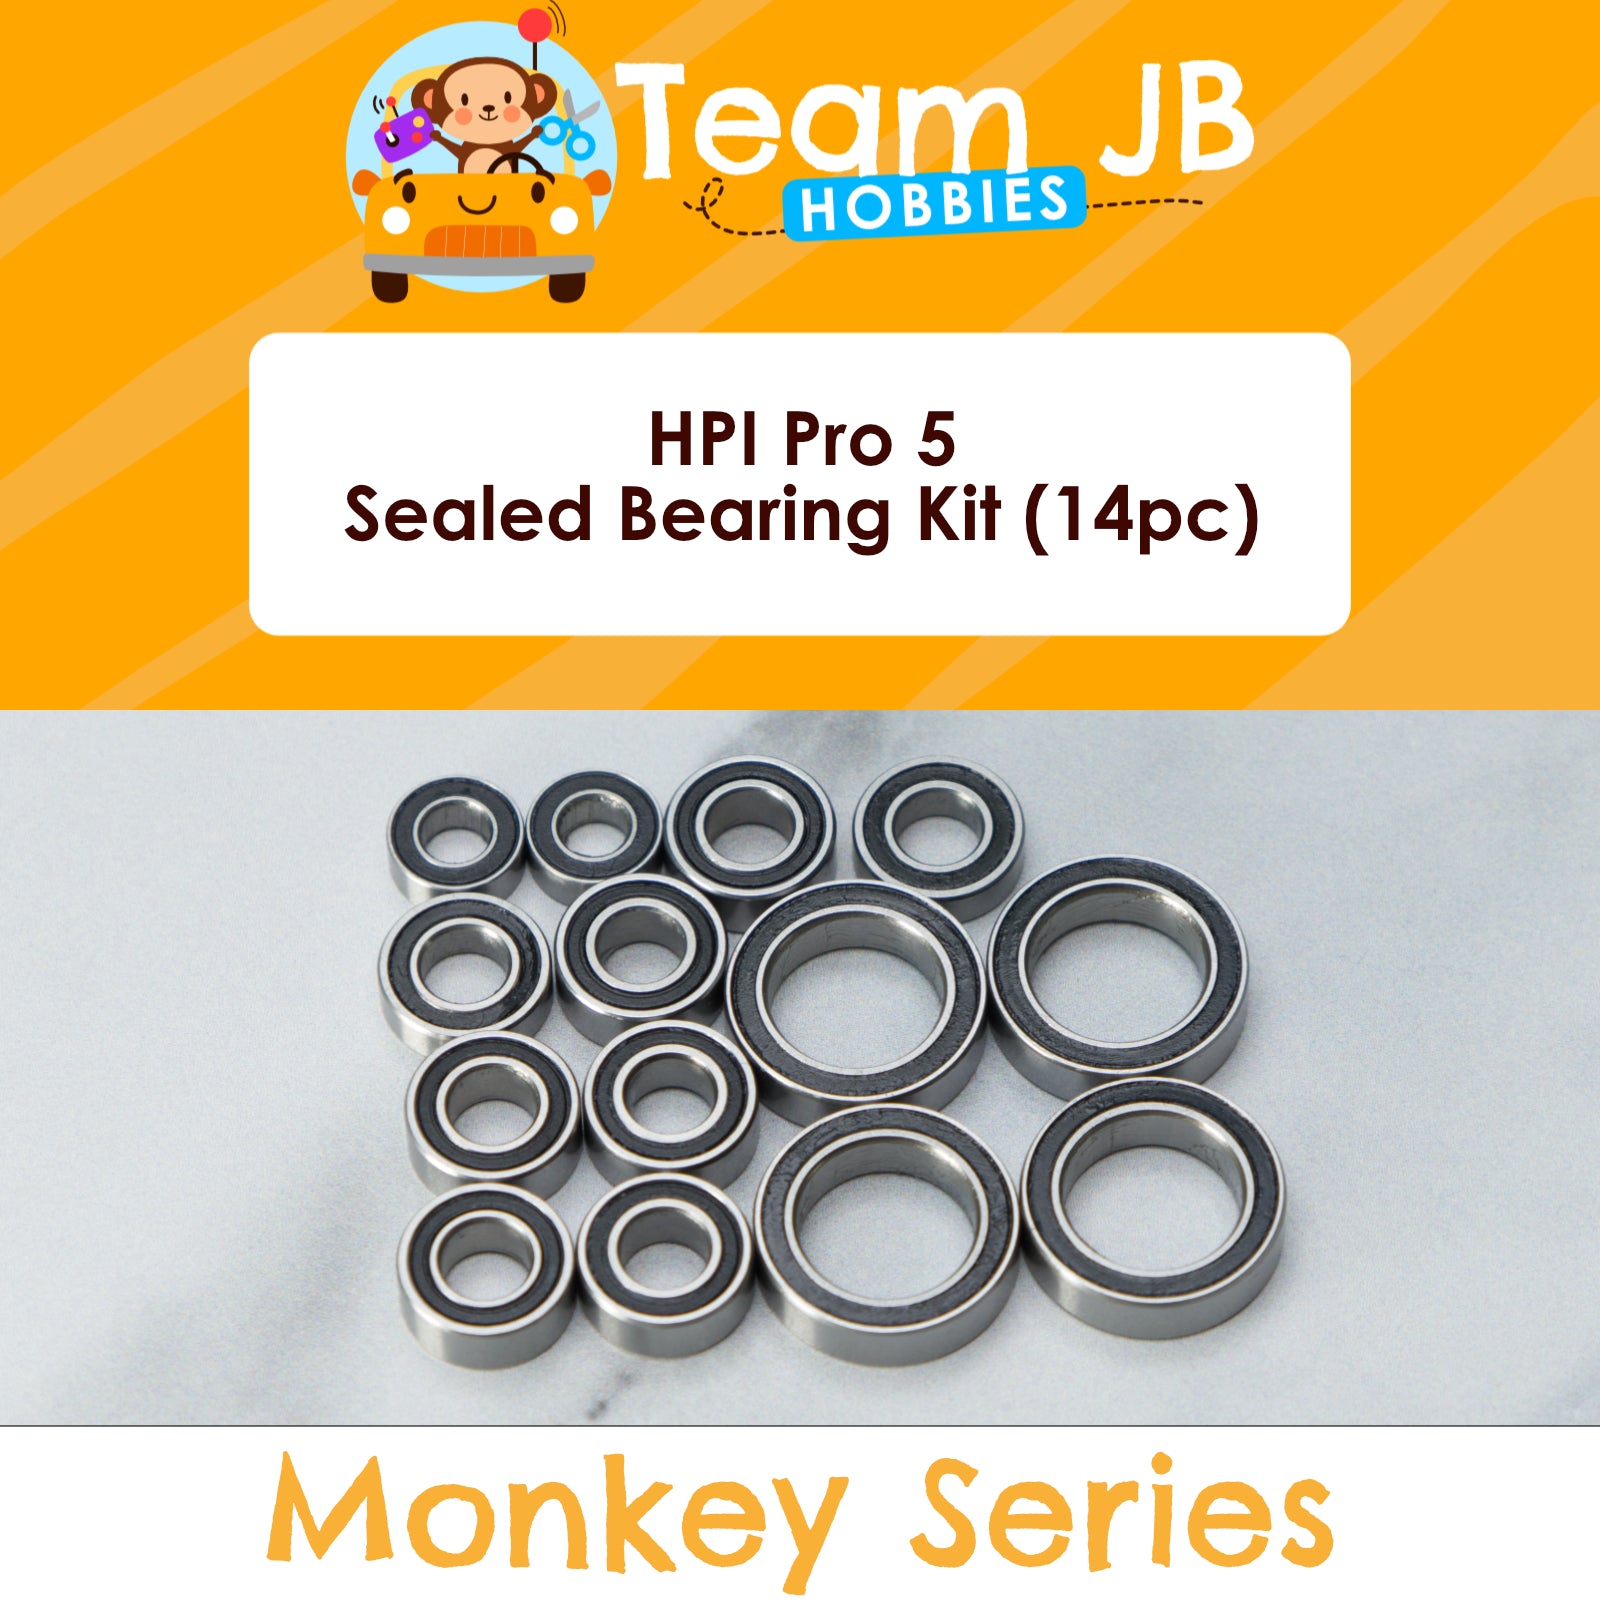 HPI Pro 5 - Sealed Bearing Kit